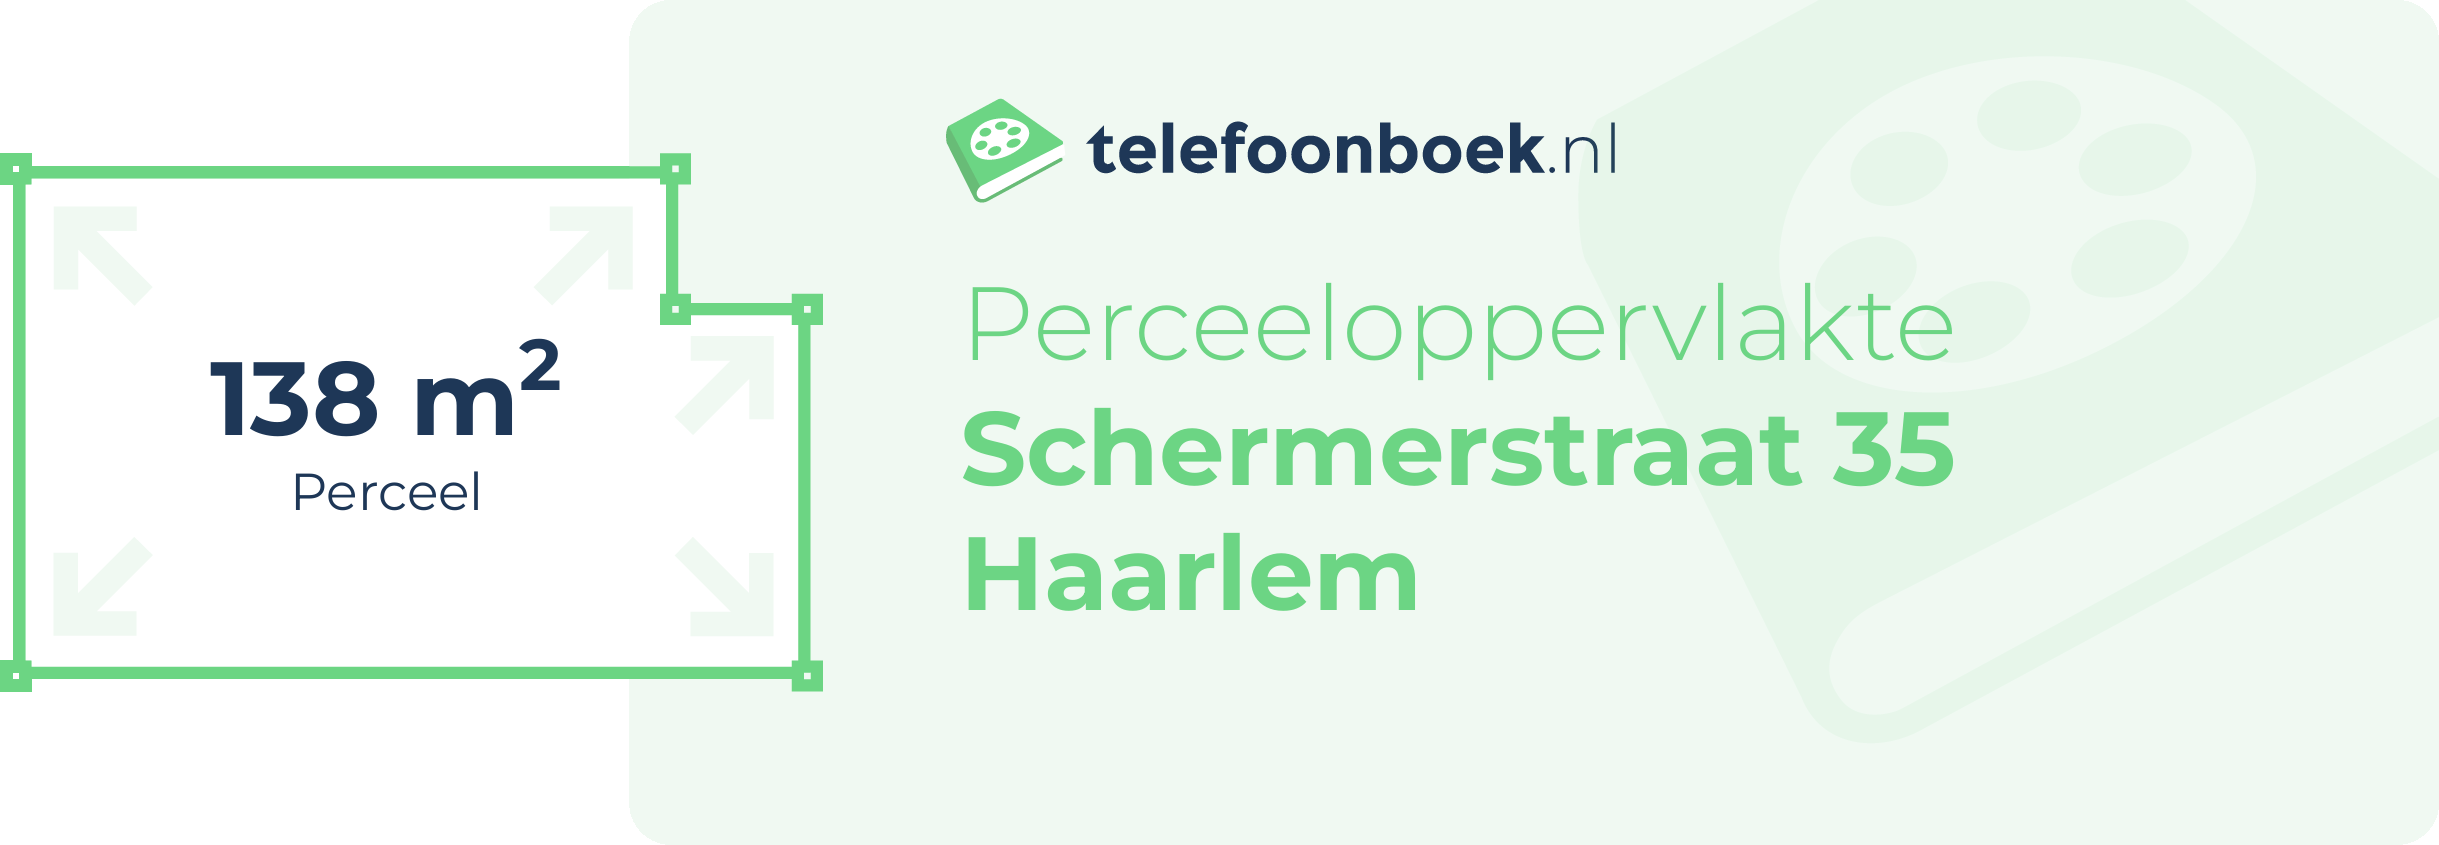 Perceeloppervlakte Schermerstraat 35 Haarlem